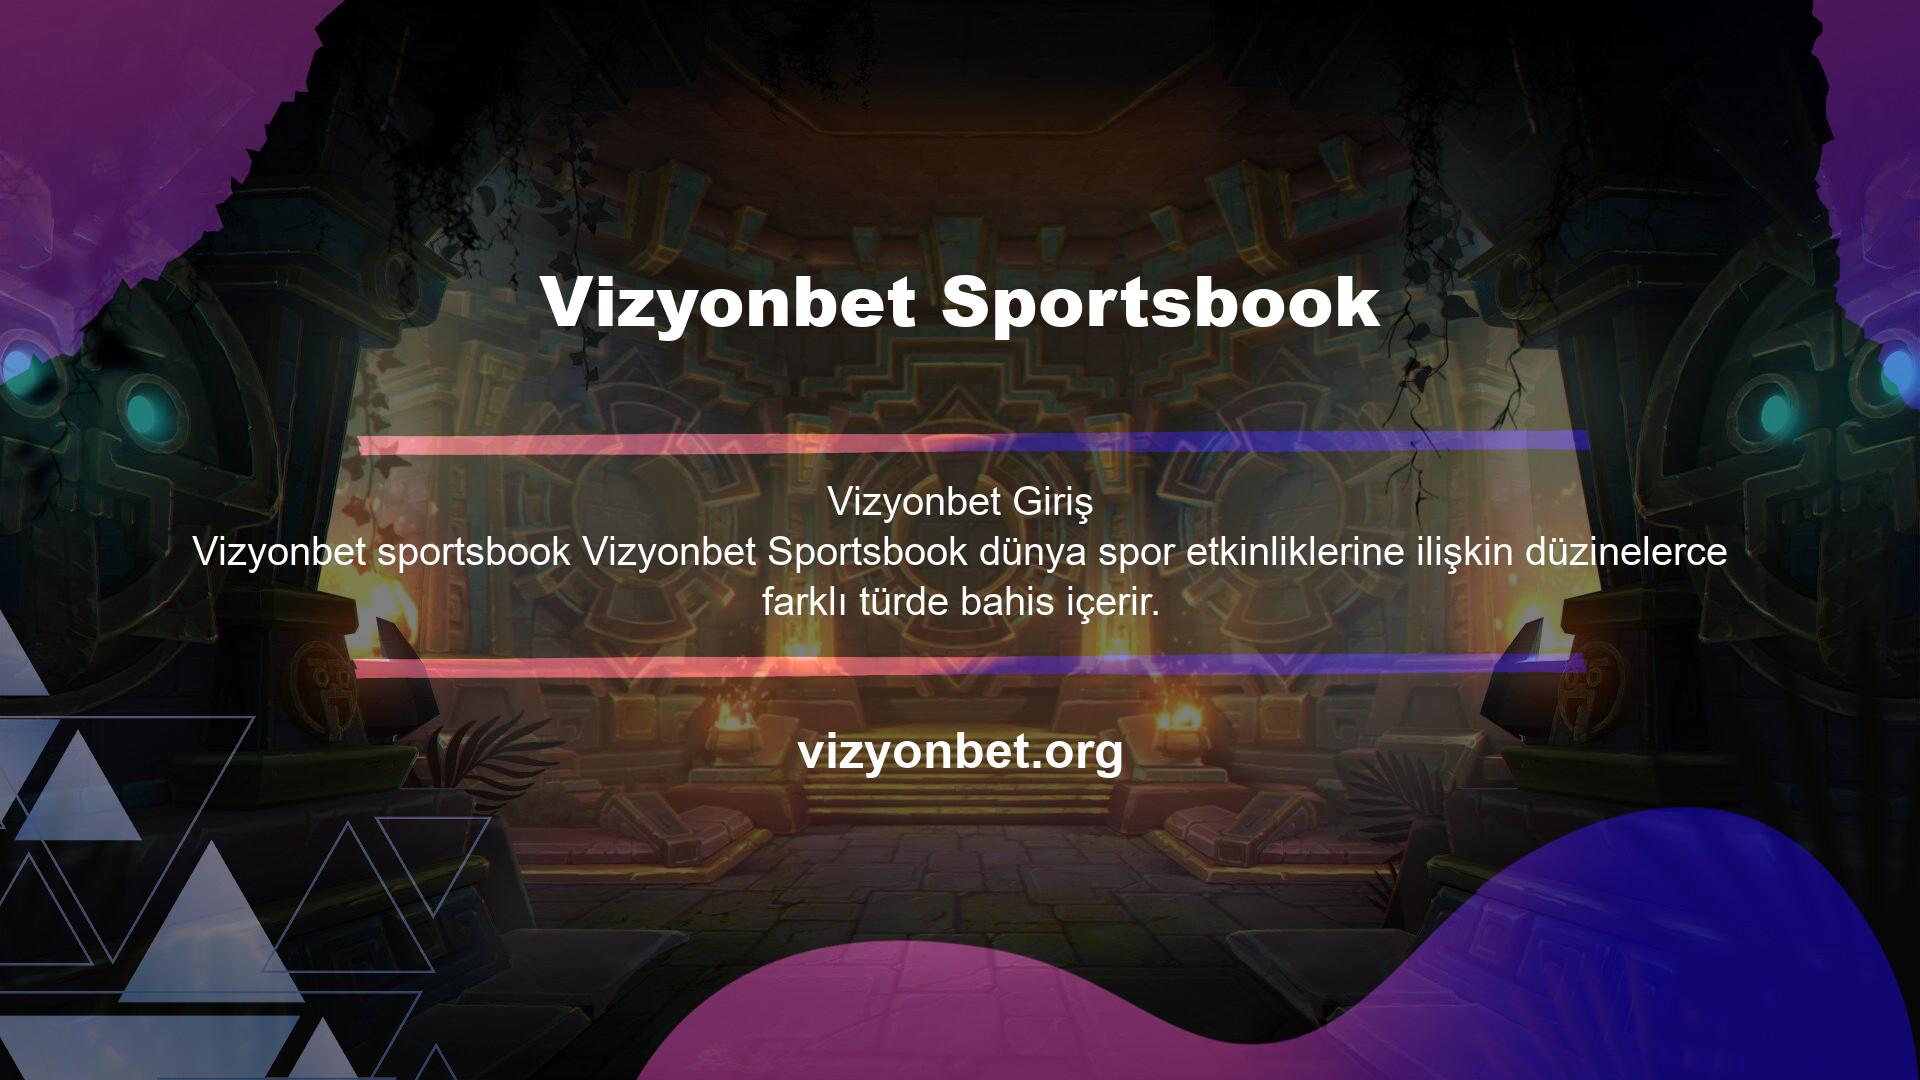 Vizyonbet, çeşitli spor etkinliklerine ilişkin birçok bahis türünü içerir ve ayrıca maç öncesi ve canlı bahis seçenekleri sunar